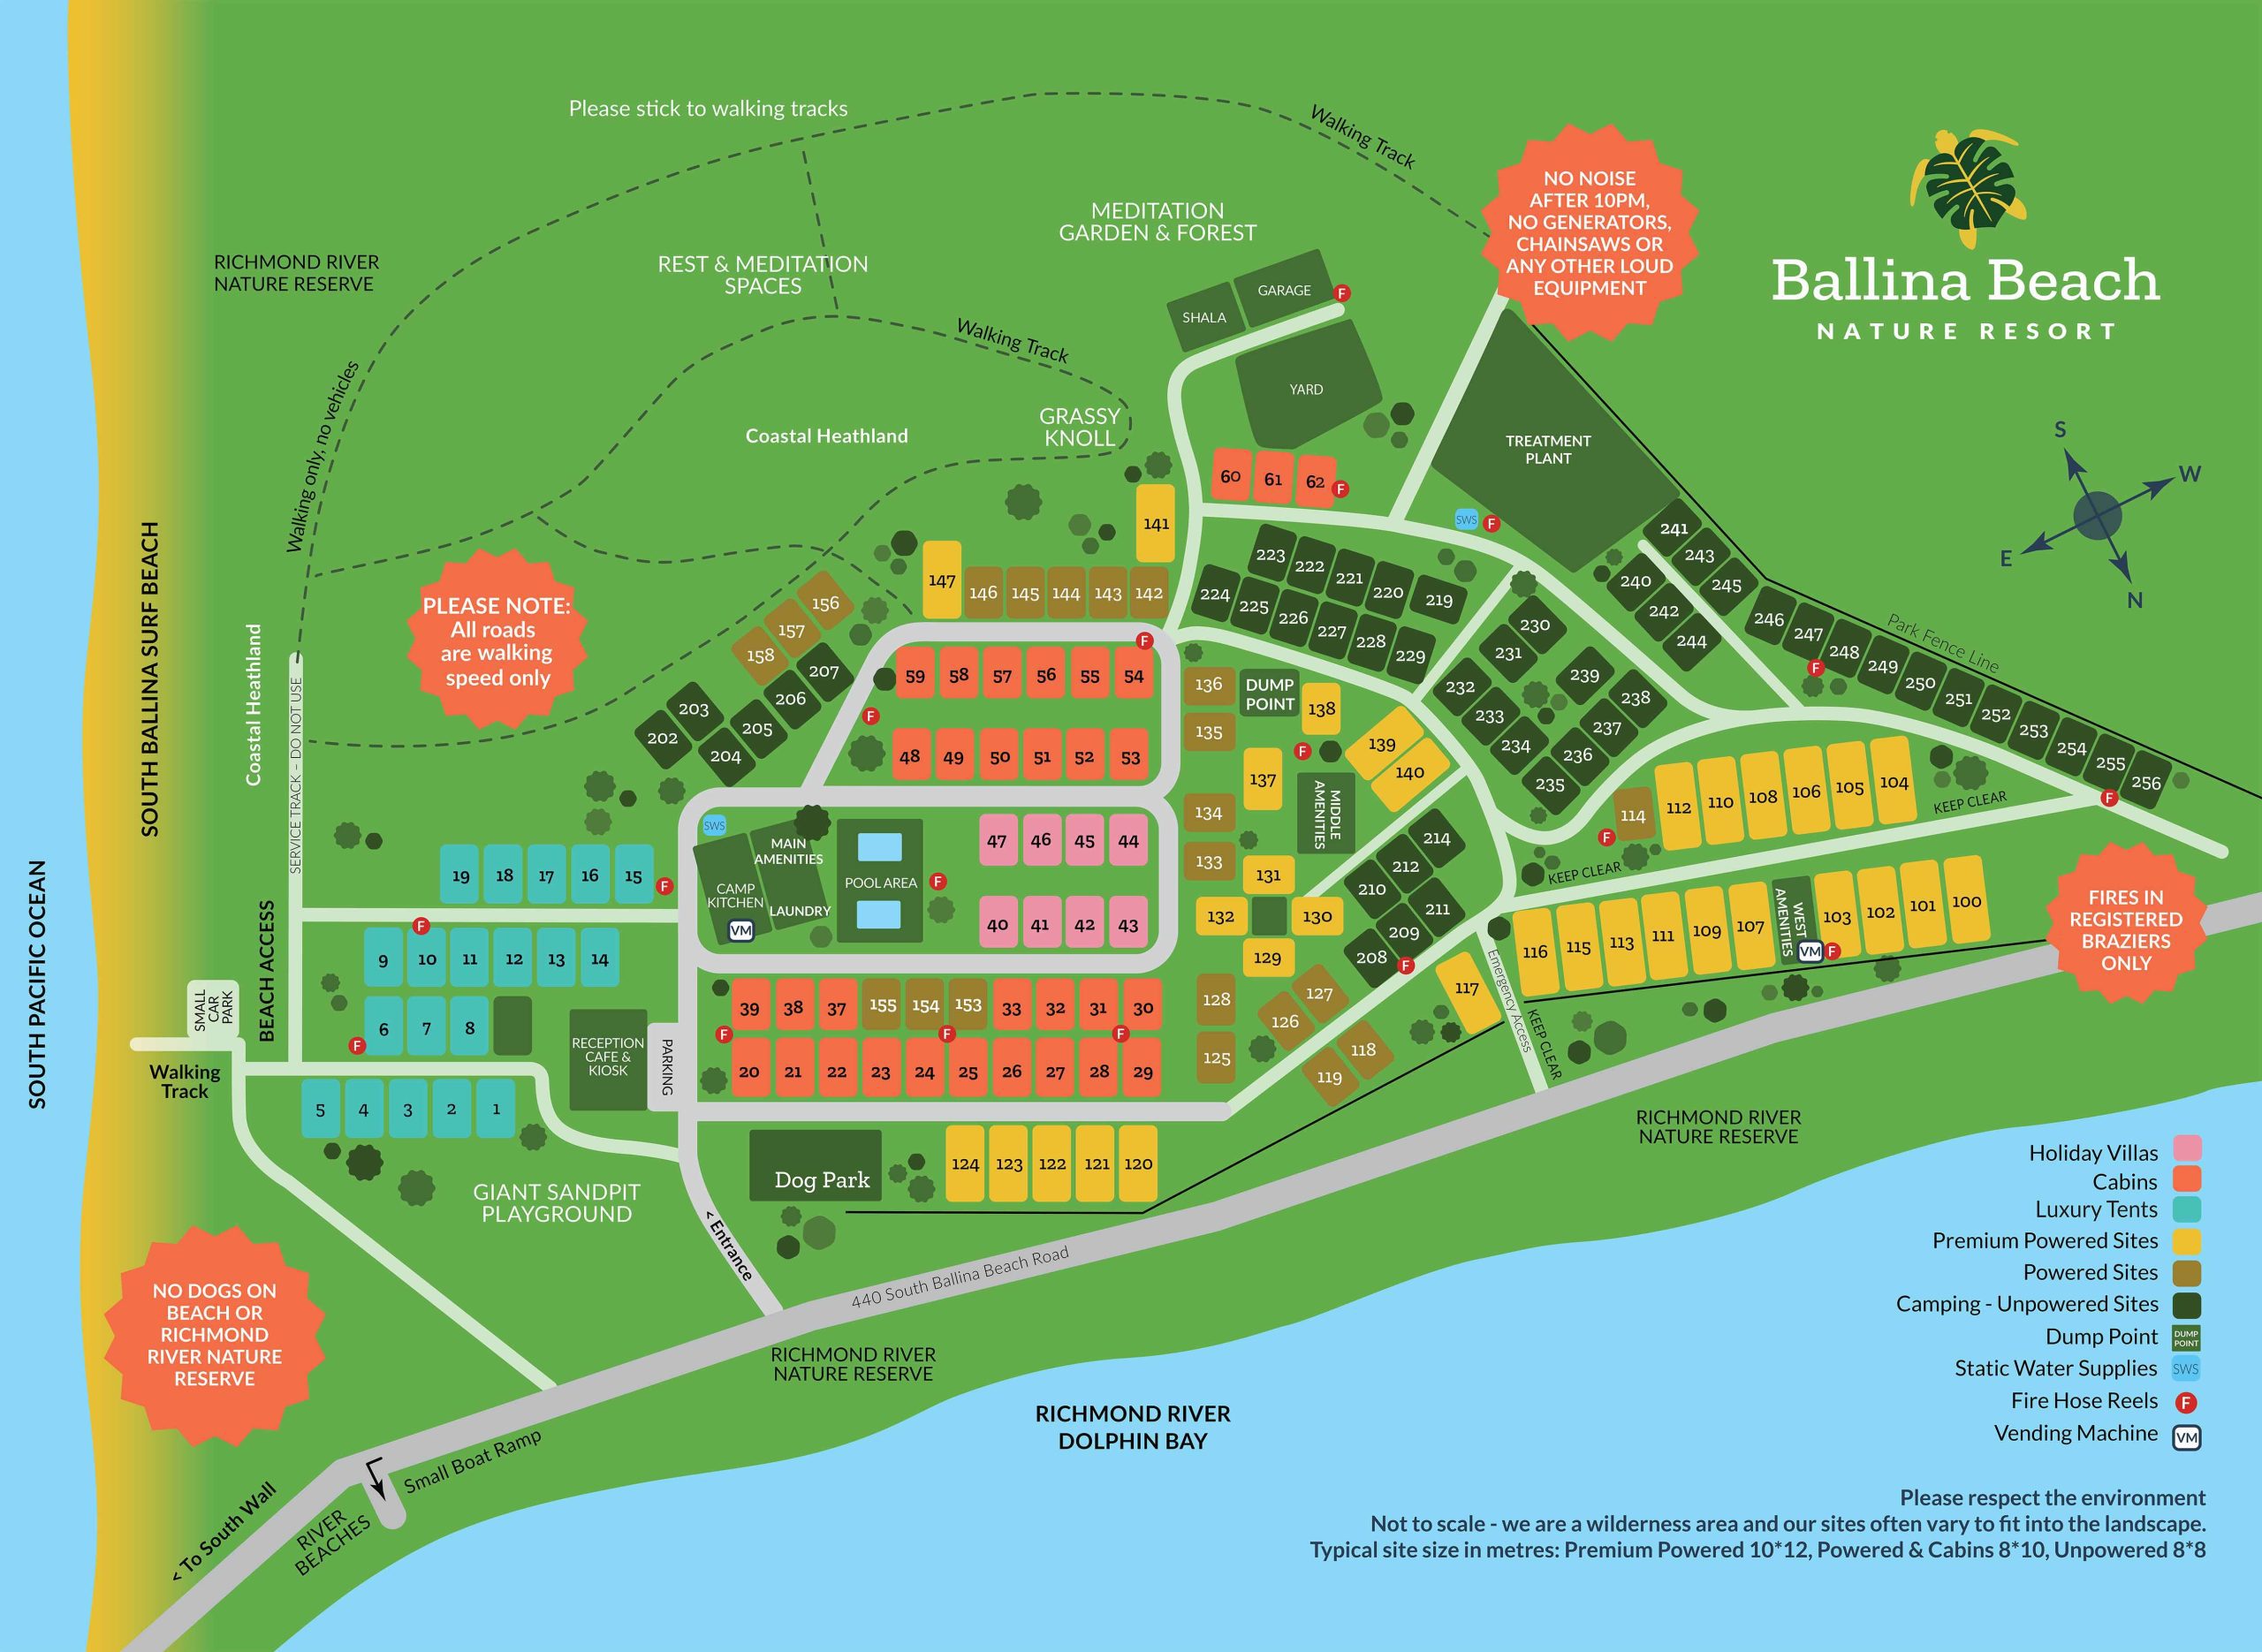 Map of Ballina Beach Nature Resort - Camping, Glamping, Powered Camp Sites, Unpowered Camp Sites